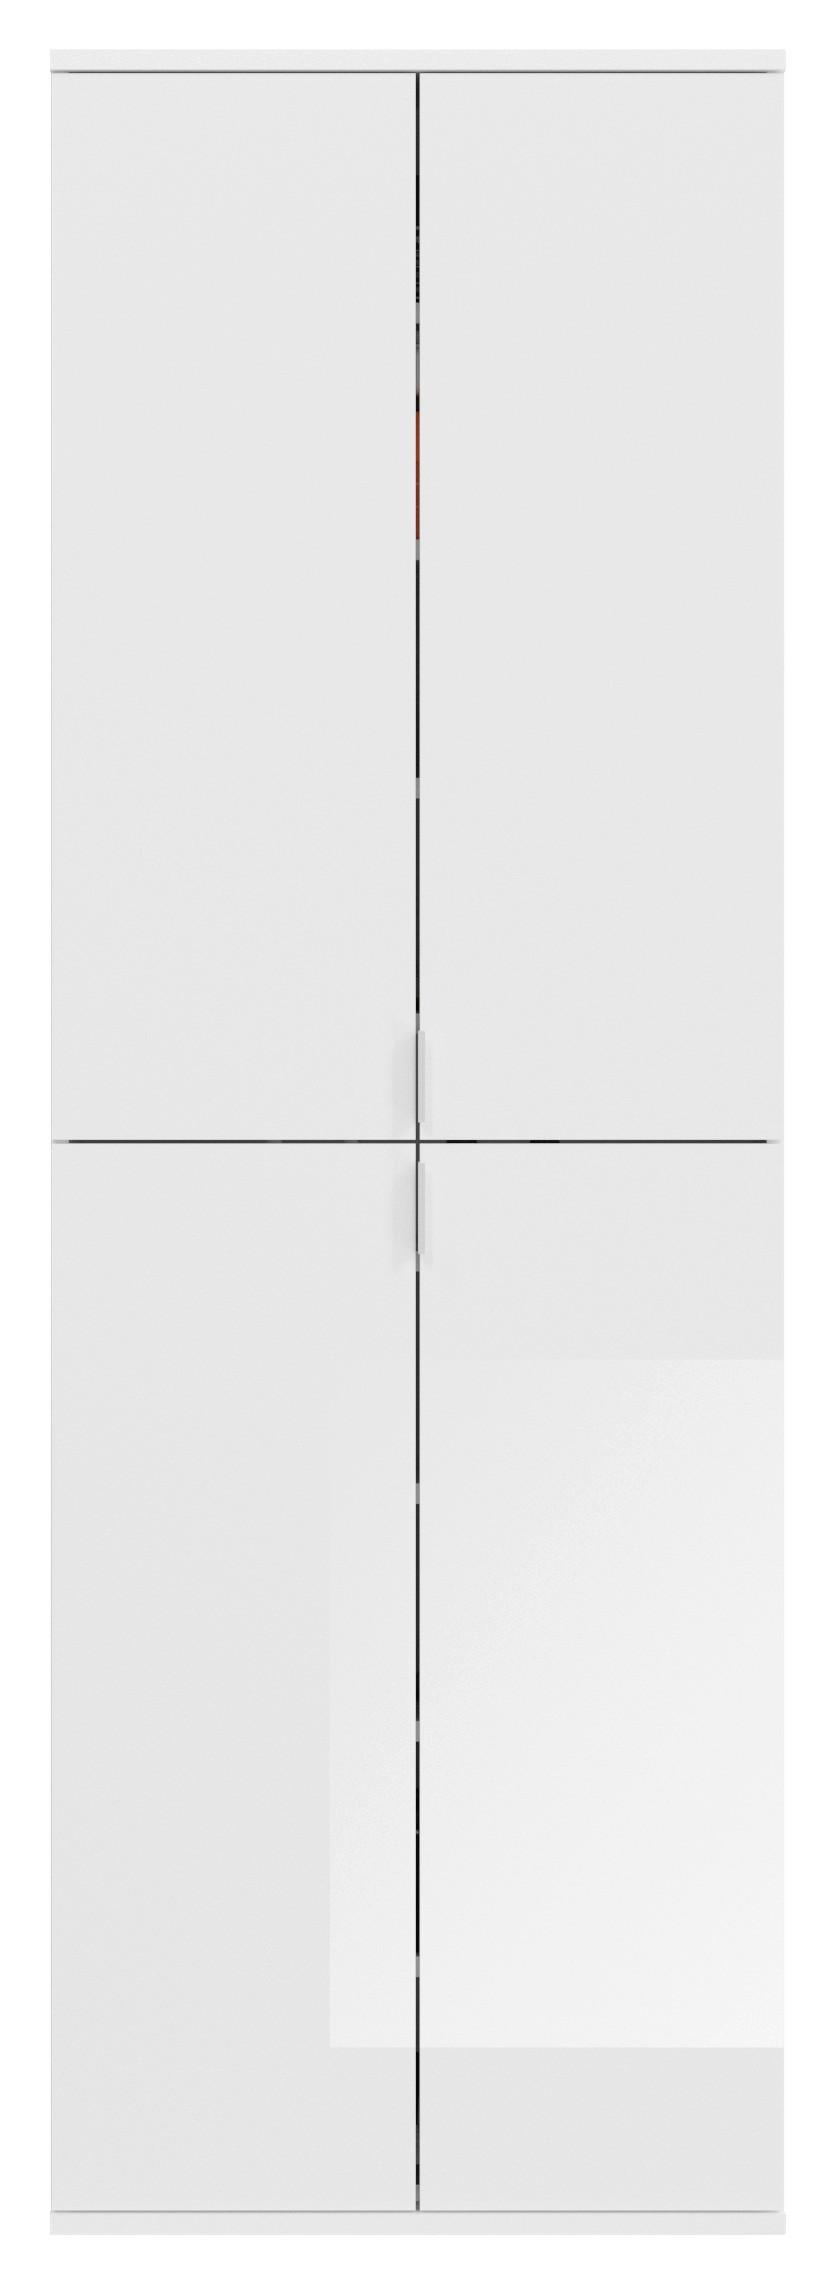 Mehrzweckschrank in Weiß - Chromfarben/Weiß hochglanz, MODERN, Holzwerkstoff/Metall (61/199/34cm) - Based